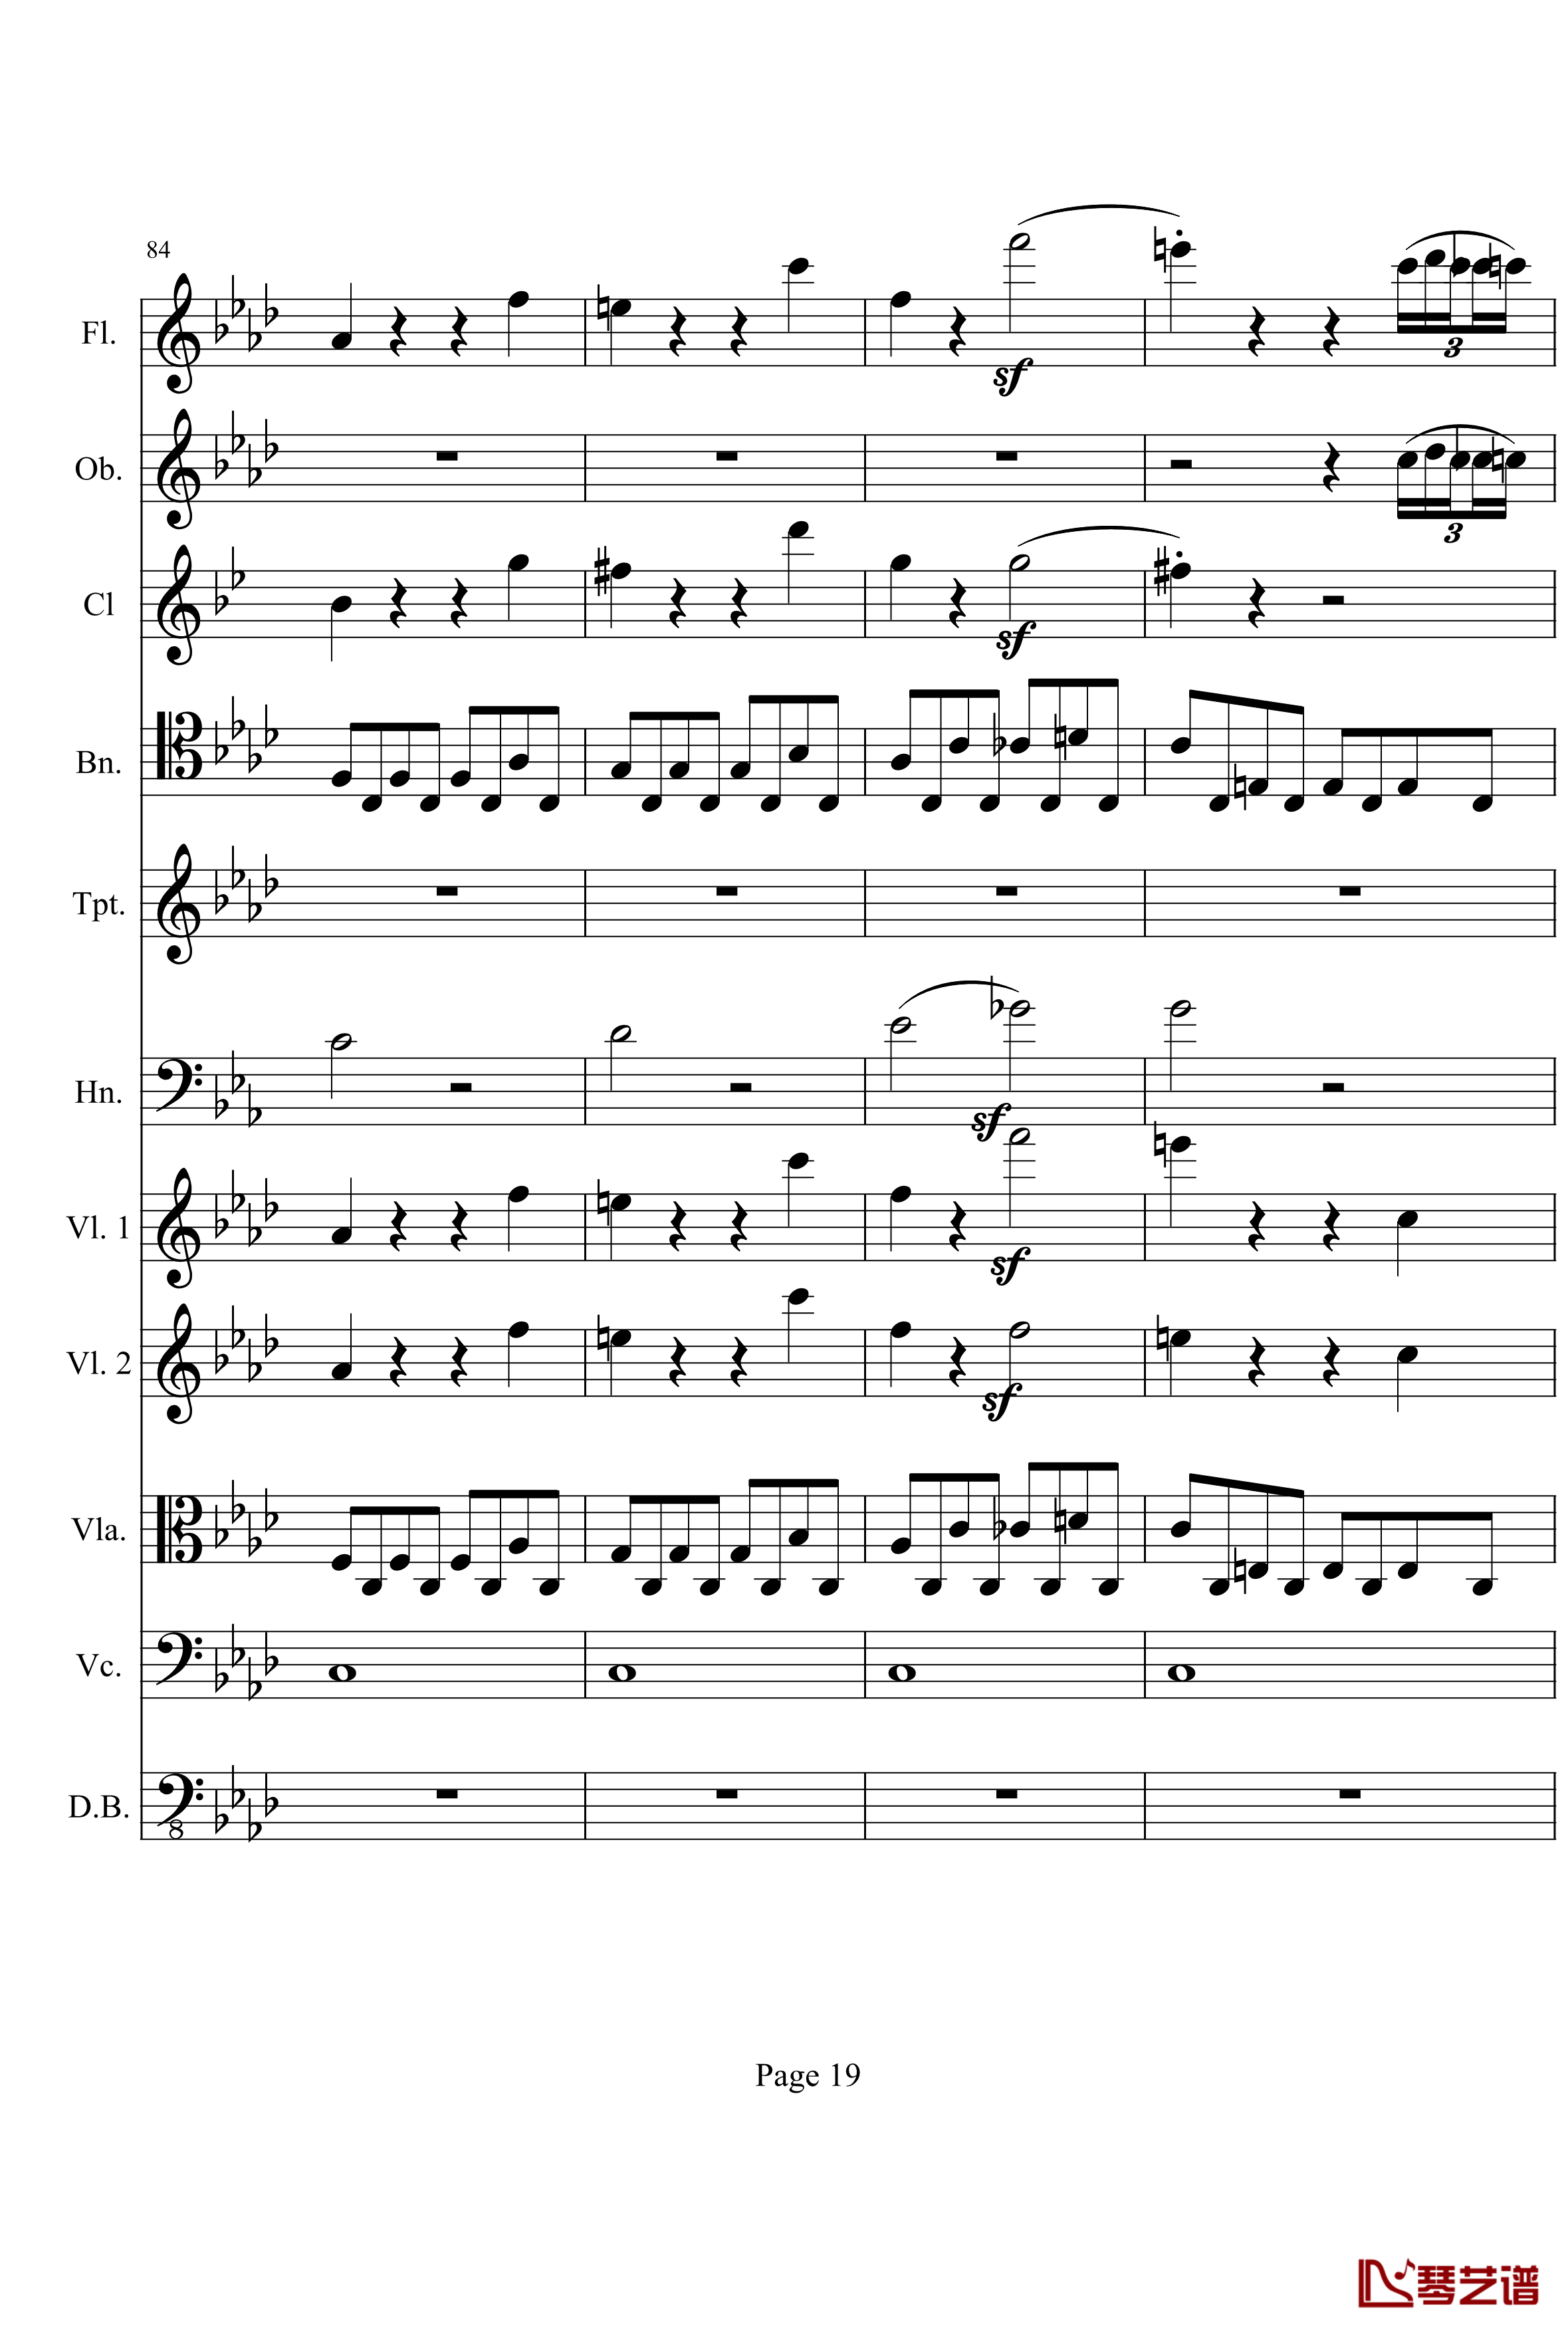 奏鸣曲之交响钢琴谱-第1首-Ⅰ-贝多芬-beethoven19